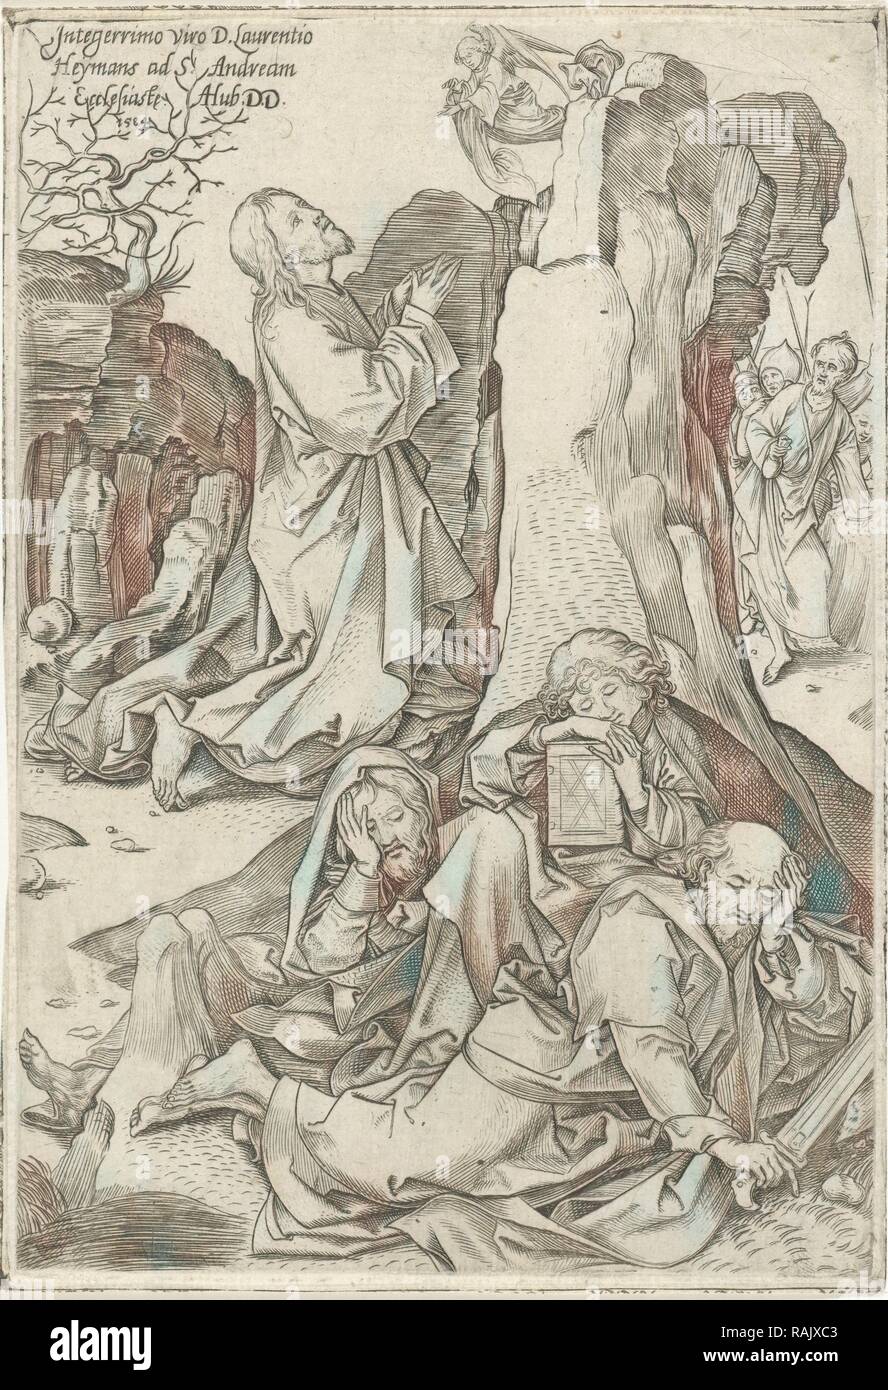 Le Christ au Jardin de Gethsémani, Adriaen Huybrechts (I), Martin Schongauer, 1584. Repensé par Gibon. L'art classique repensé Banque D'Images